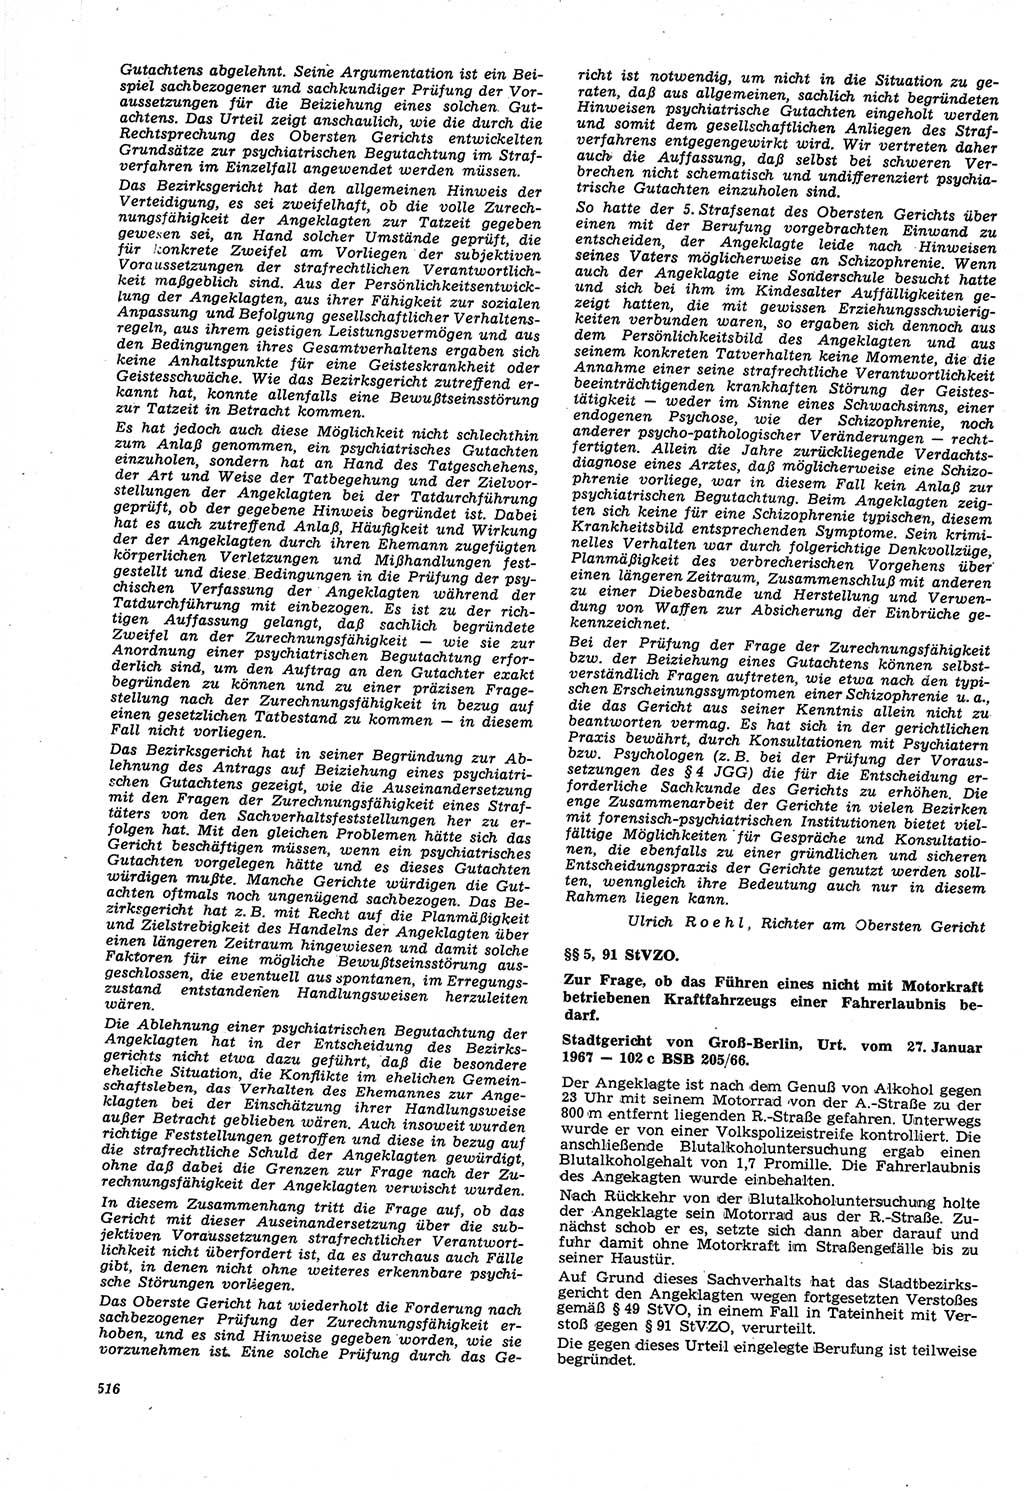 Neue Justiz (NJ), Zeitschrift für Recht und Rechtswissenschaft [Deutsche Demokratische Republik (DDR)], 21. Jahrgang 1967, Seite 516 (NJ DDR 1967, S. 516)